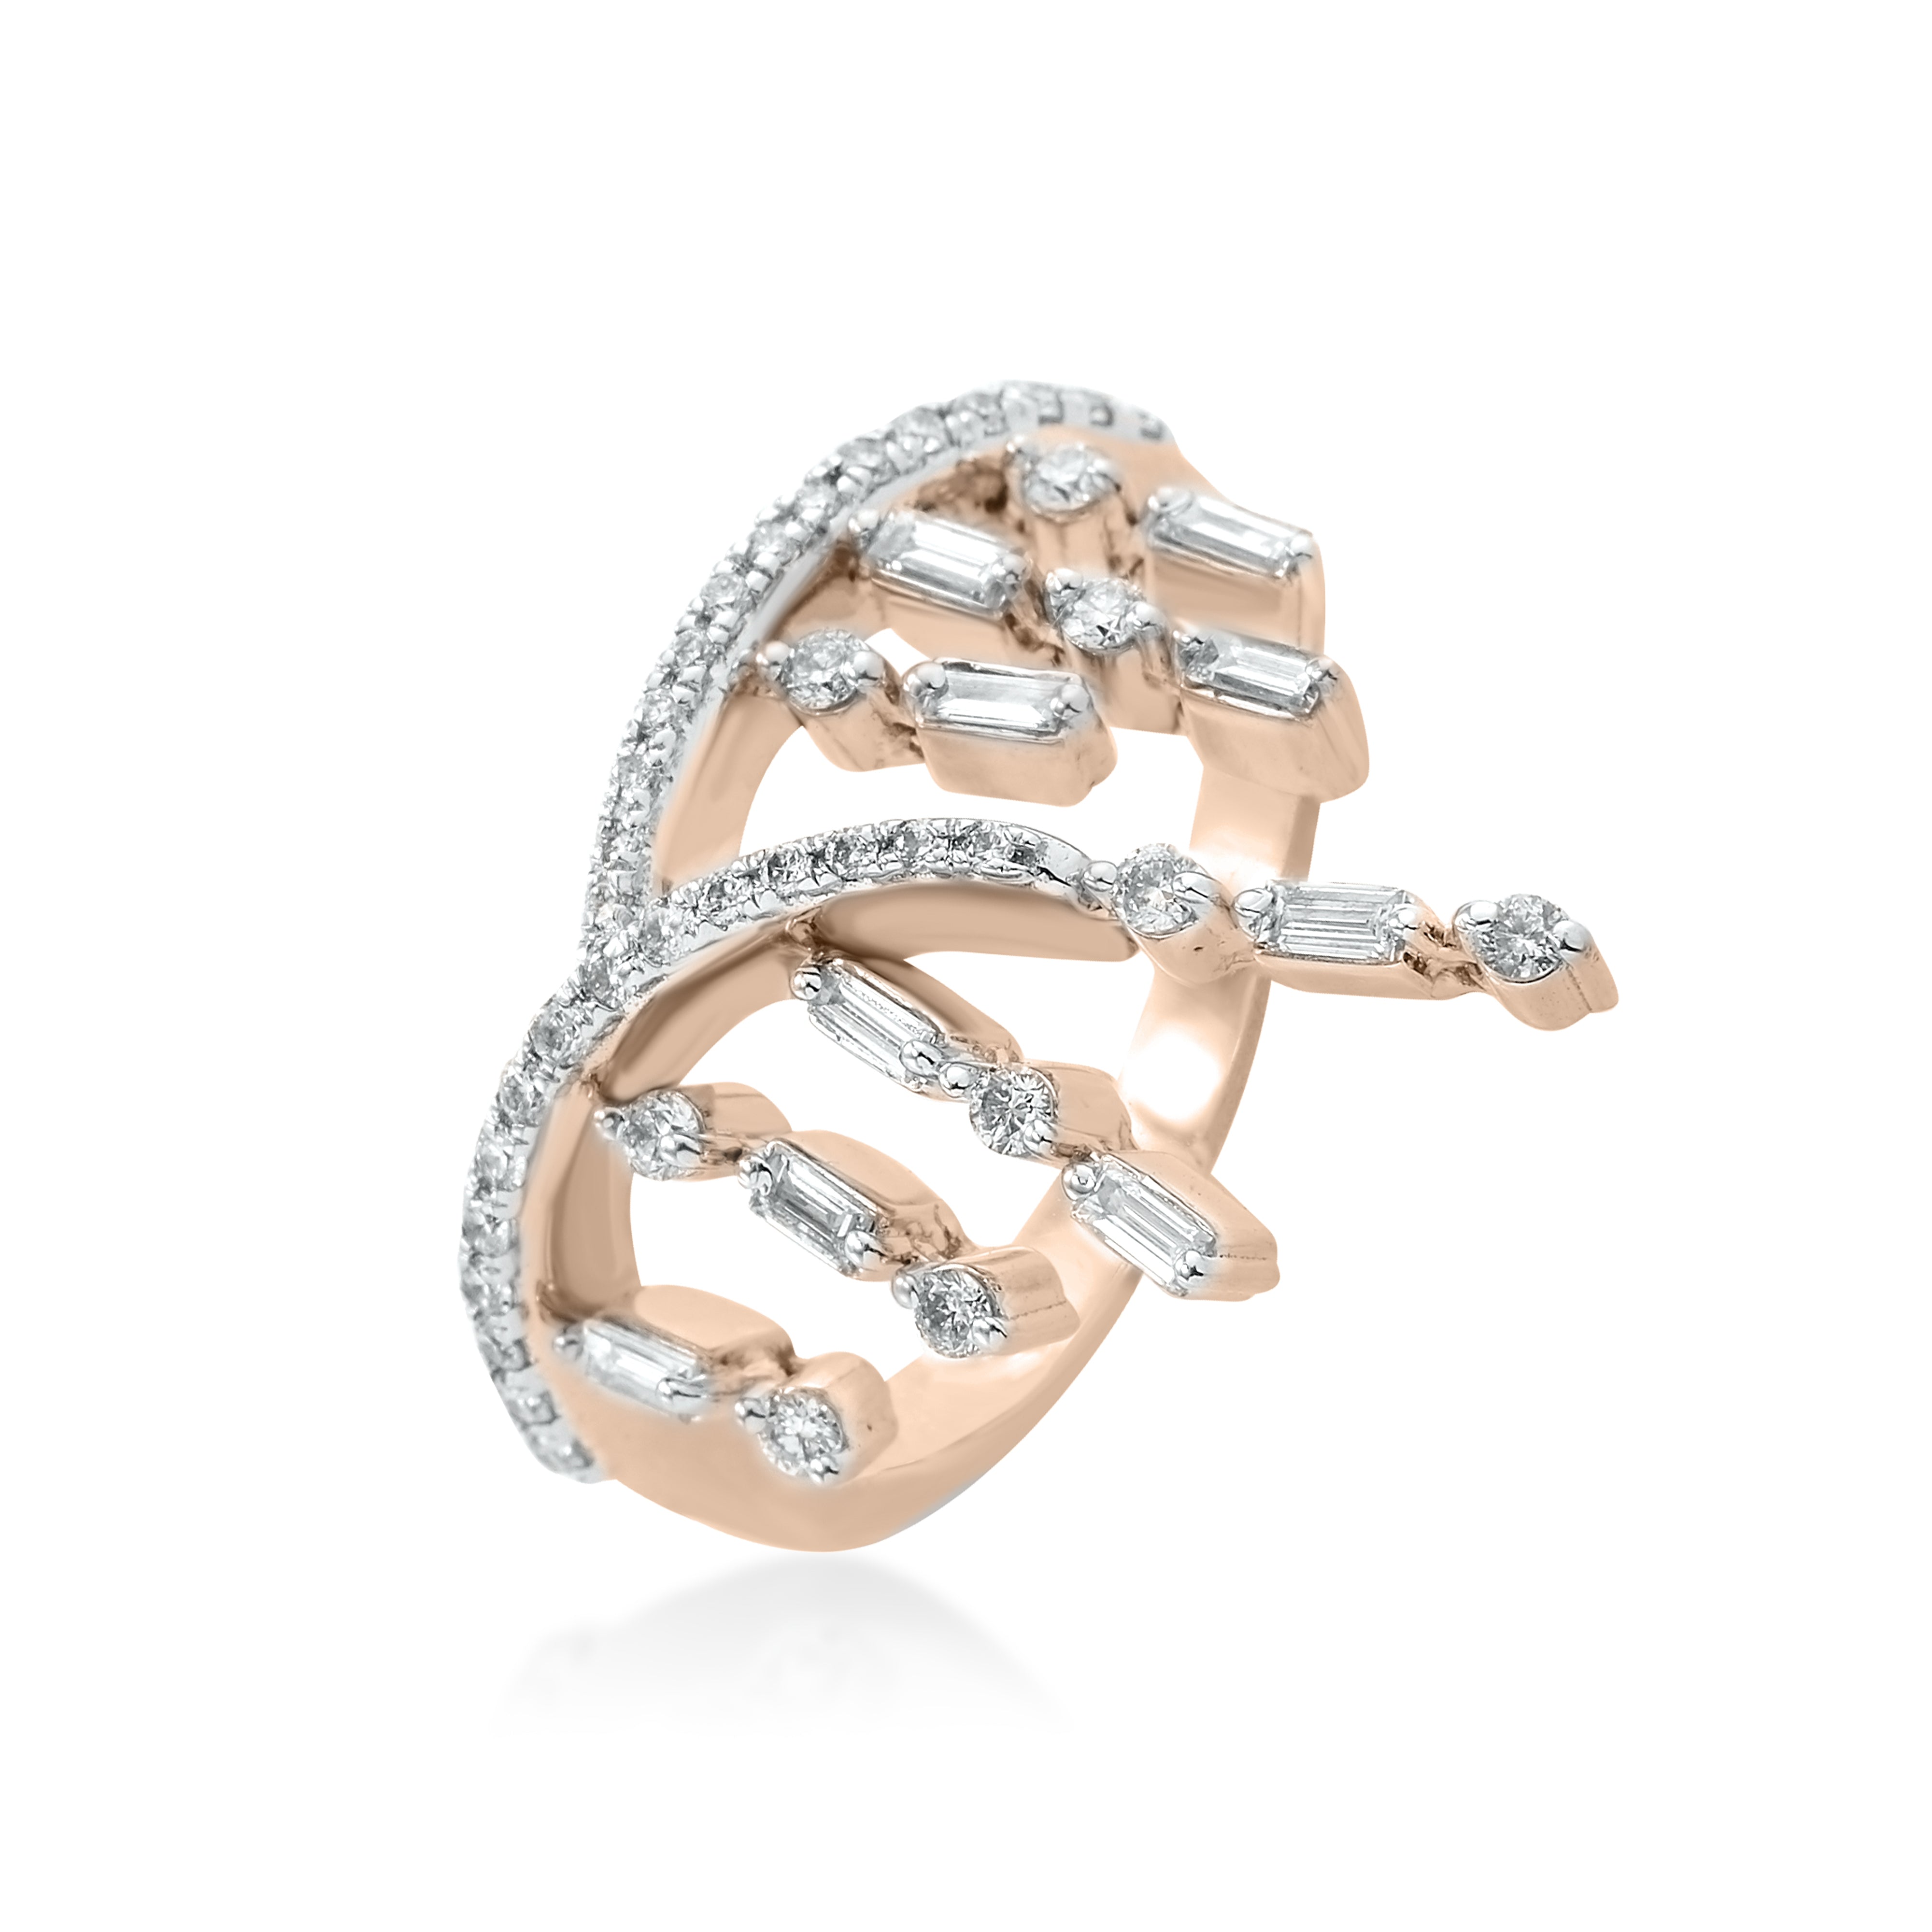 Diamond Ring 001-130-00991 - Women's Diamond Fashion Rings | Krekeler  Jewelers | Farmington, MO